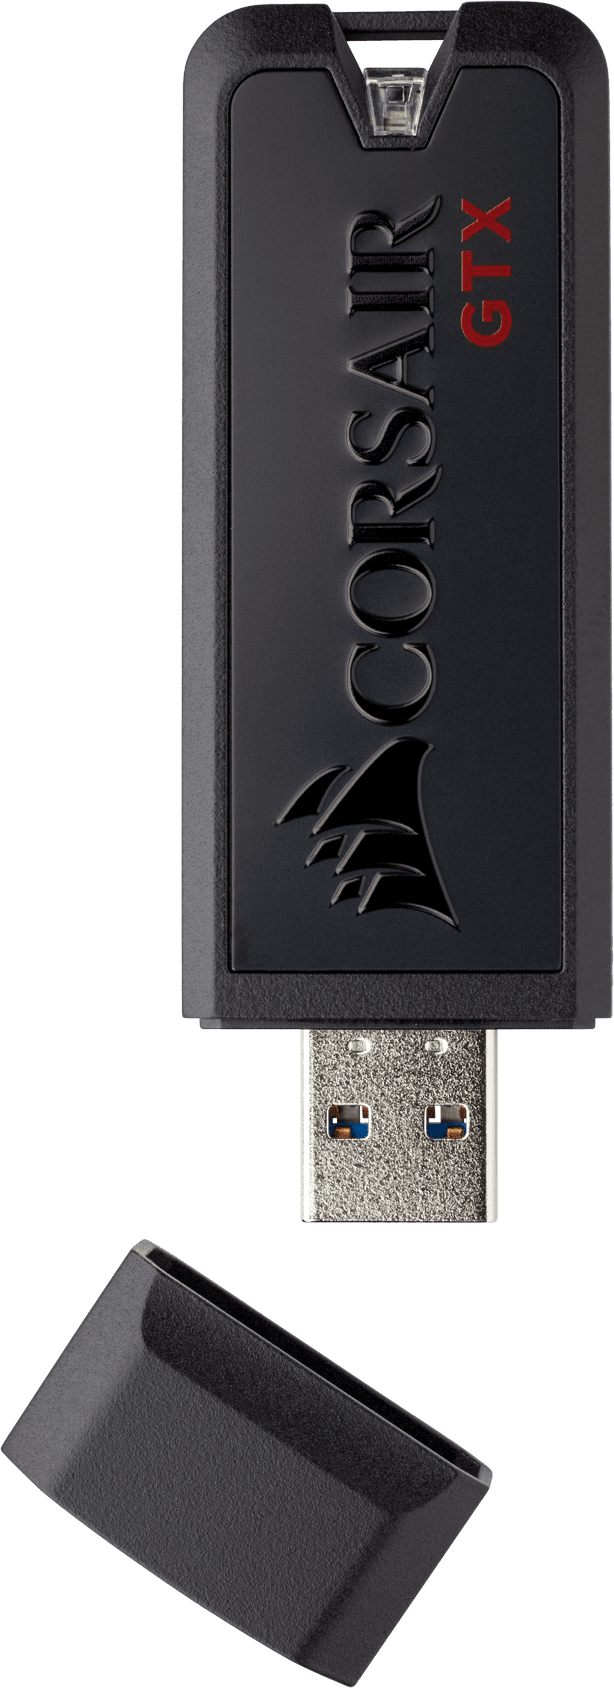 Flash Voyager® GTX USB 3.1 512GB Premium Flash Drive